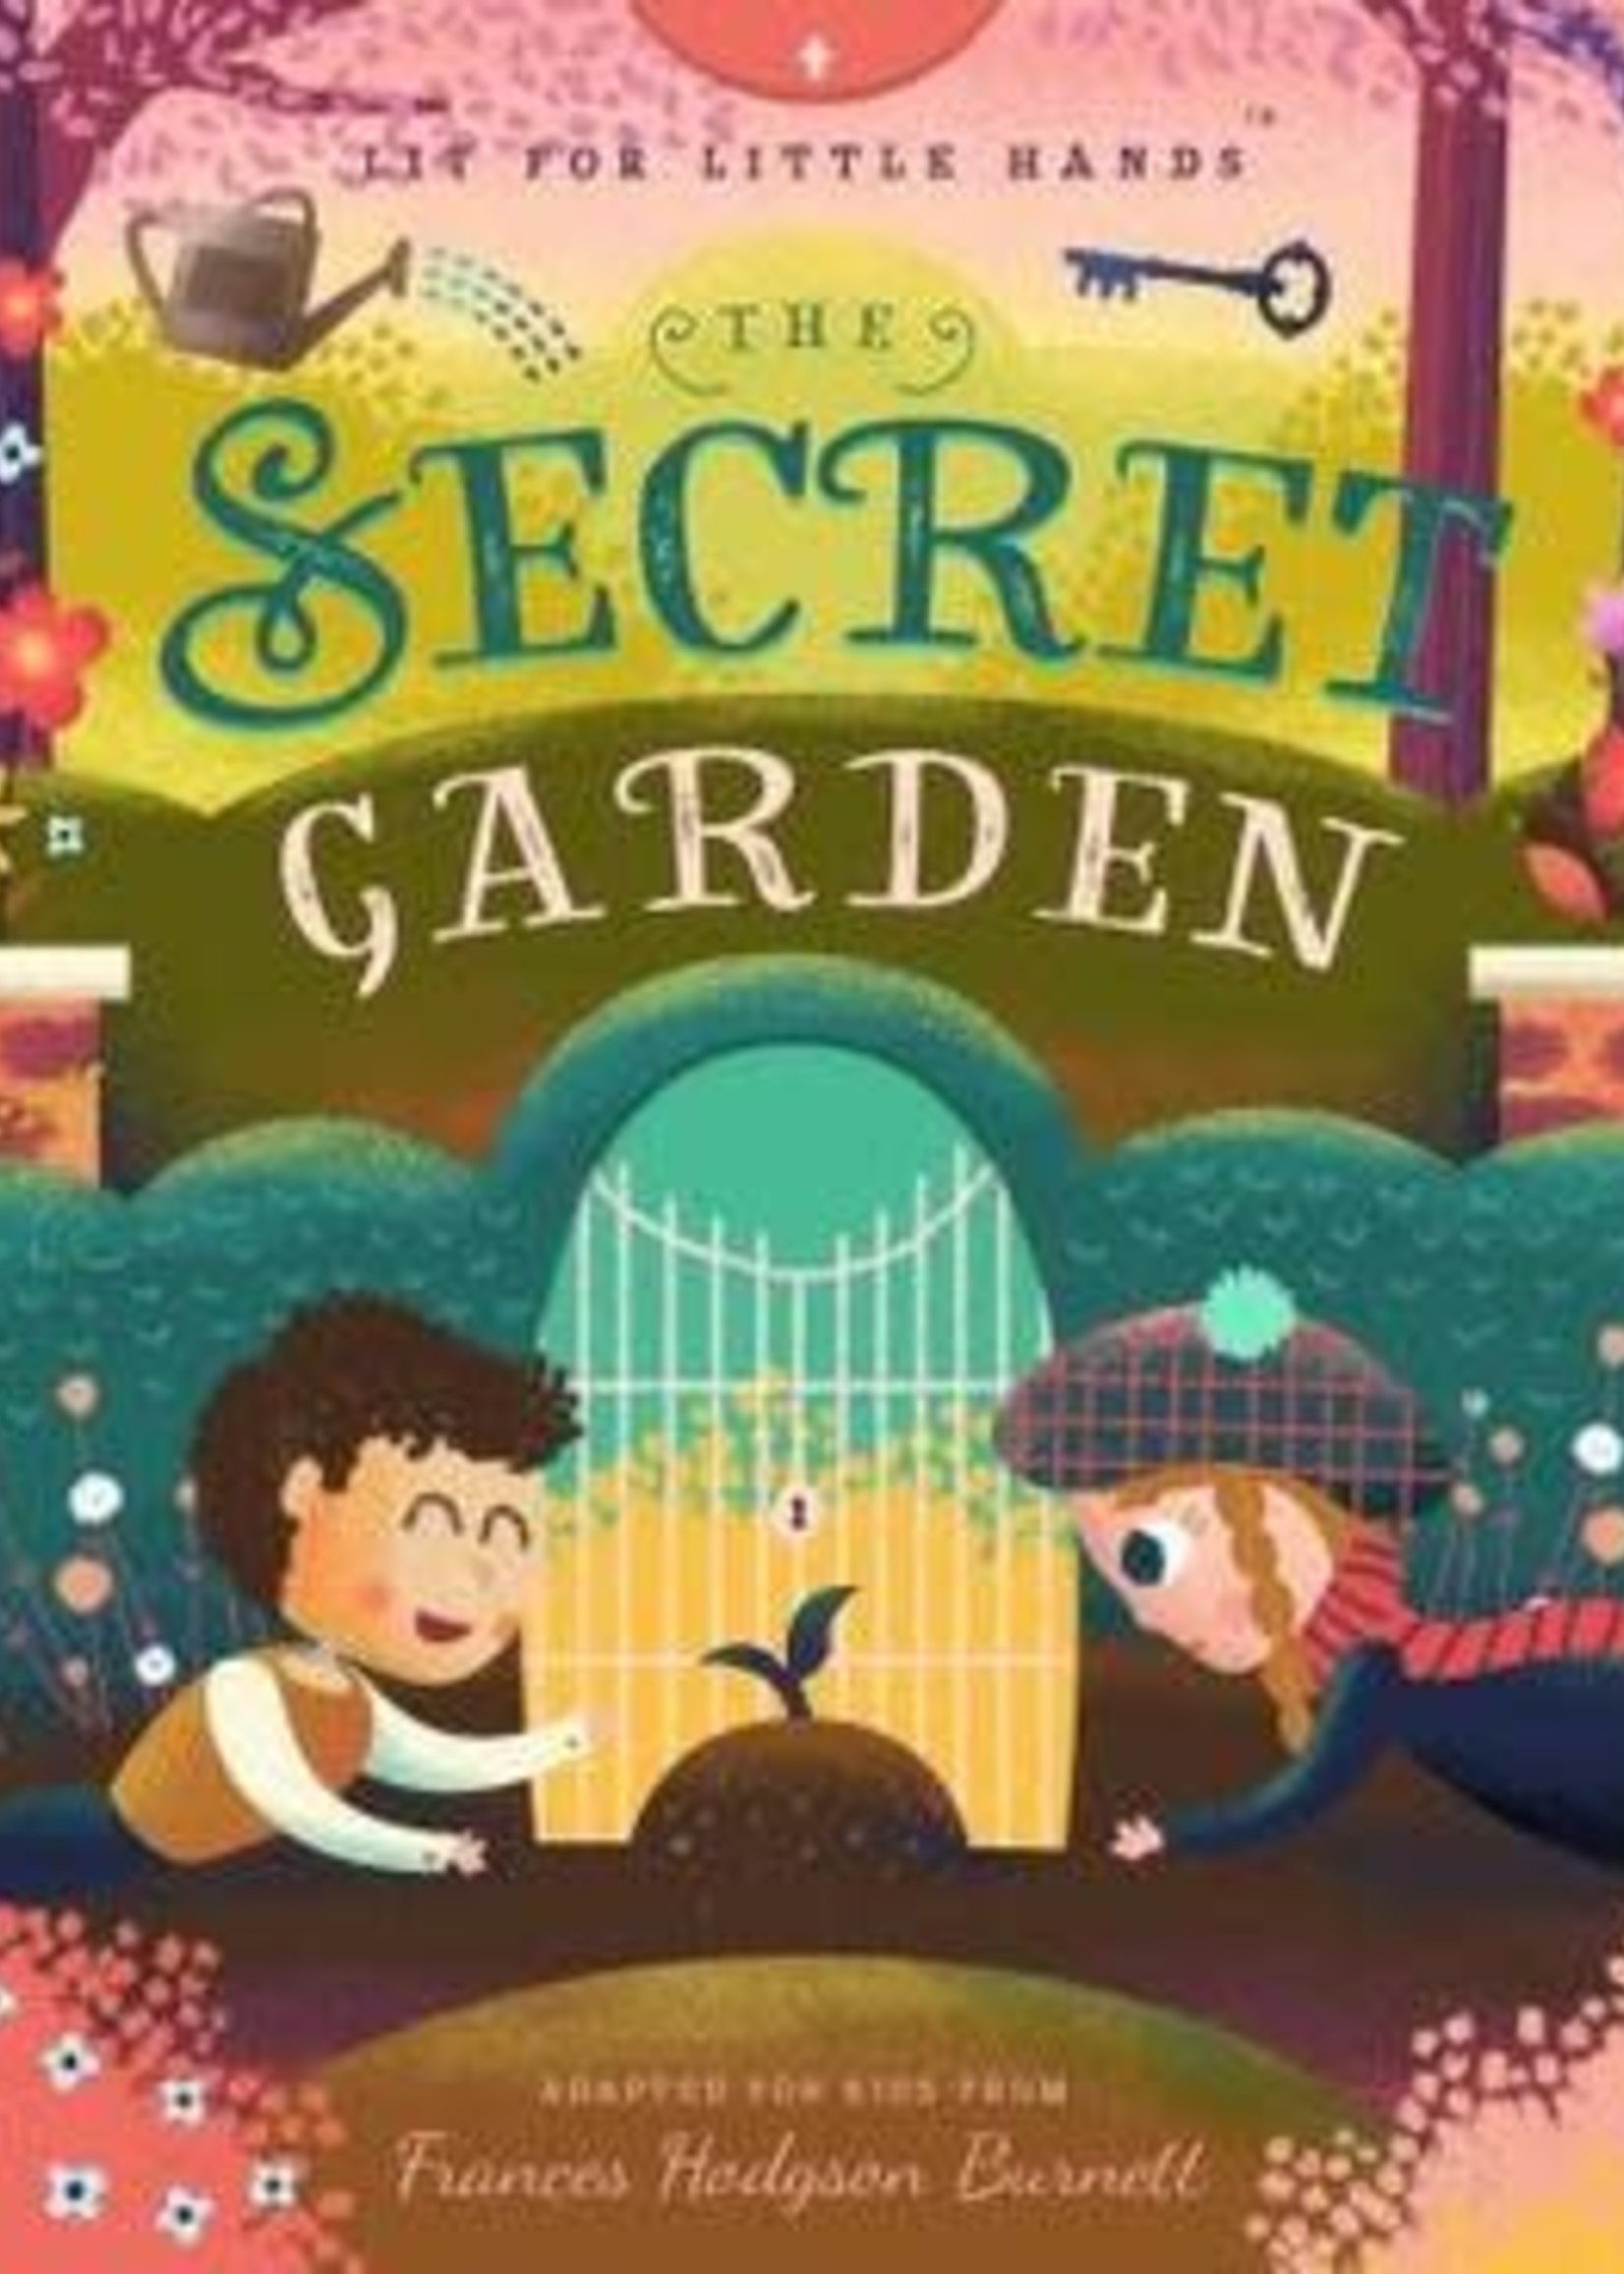 The Secret Garden (Lit for Little Hands #4) by Brooke Jorden,  David W. Miles,  Frances Hodgson Burnett